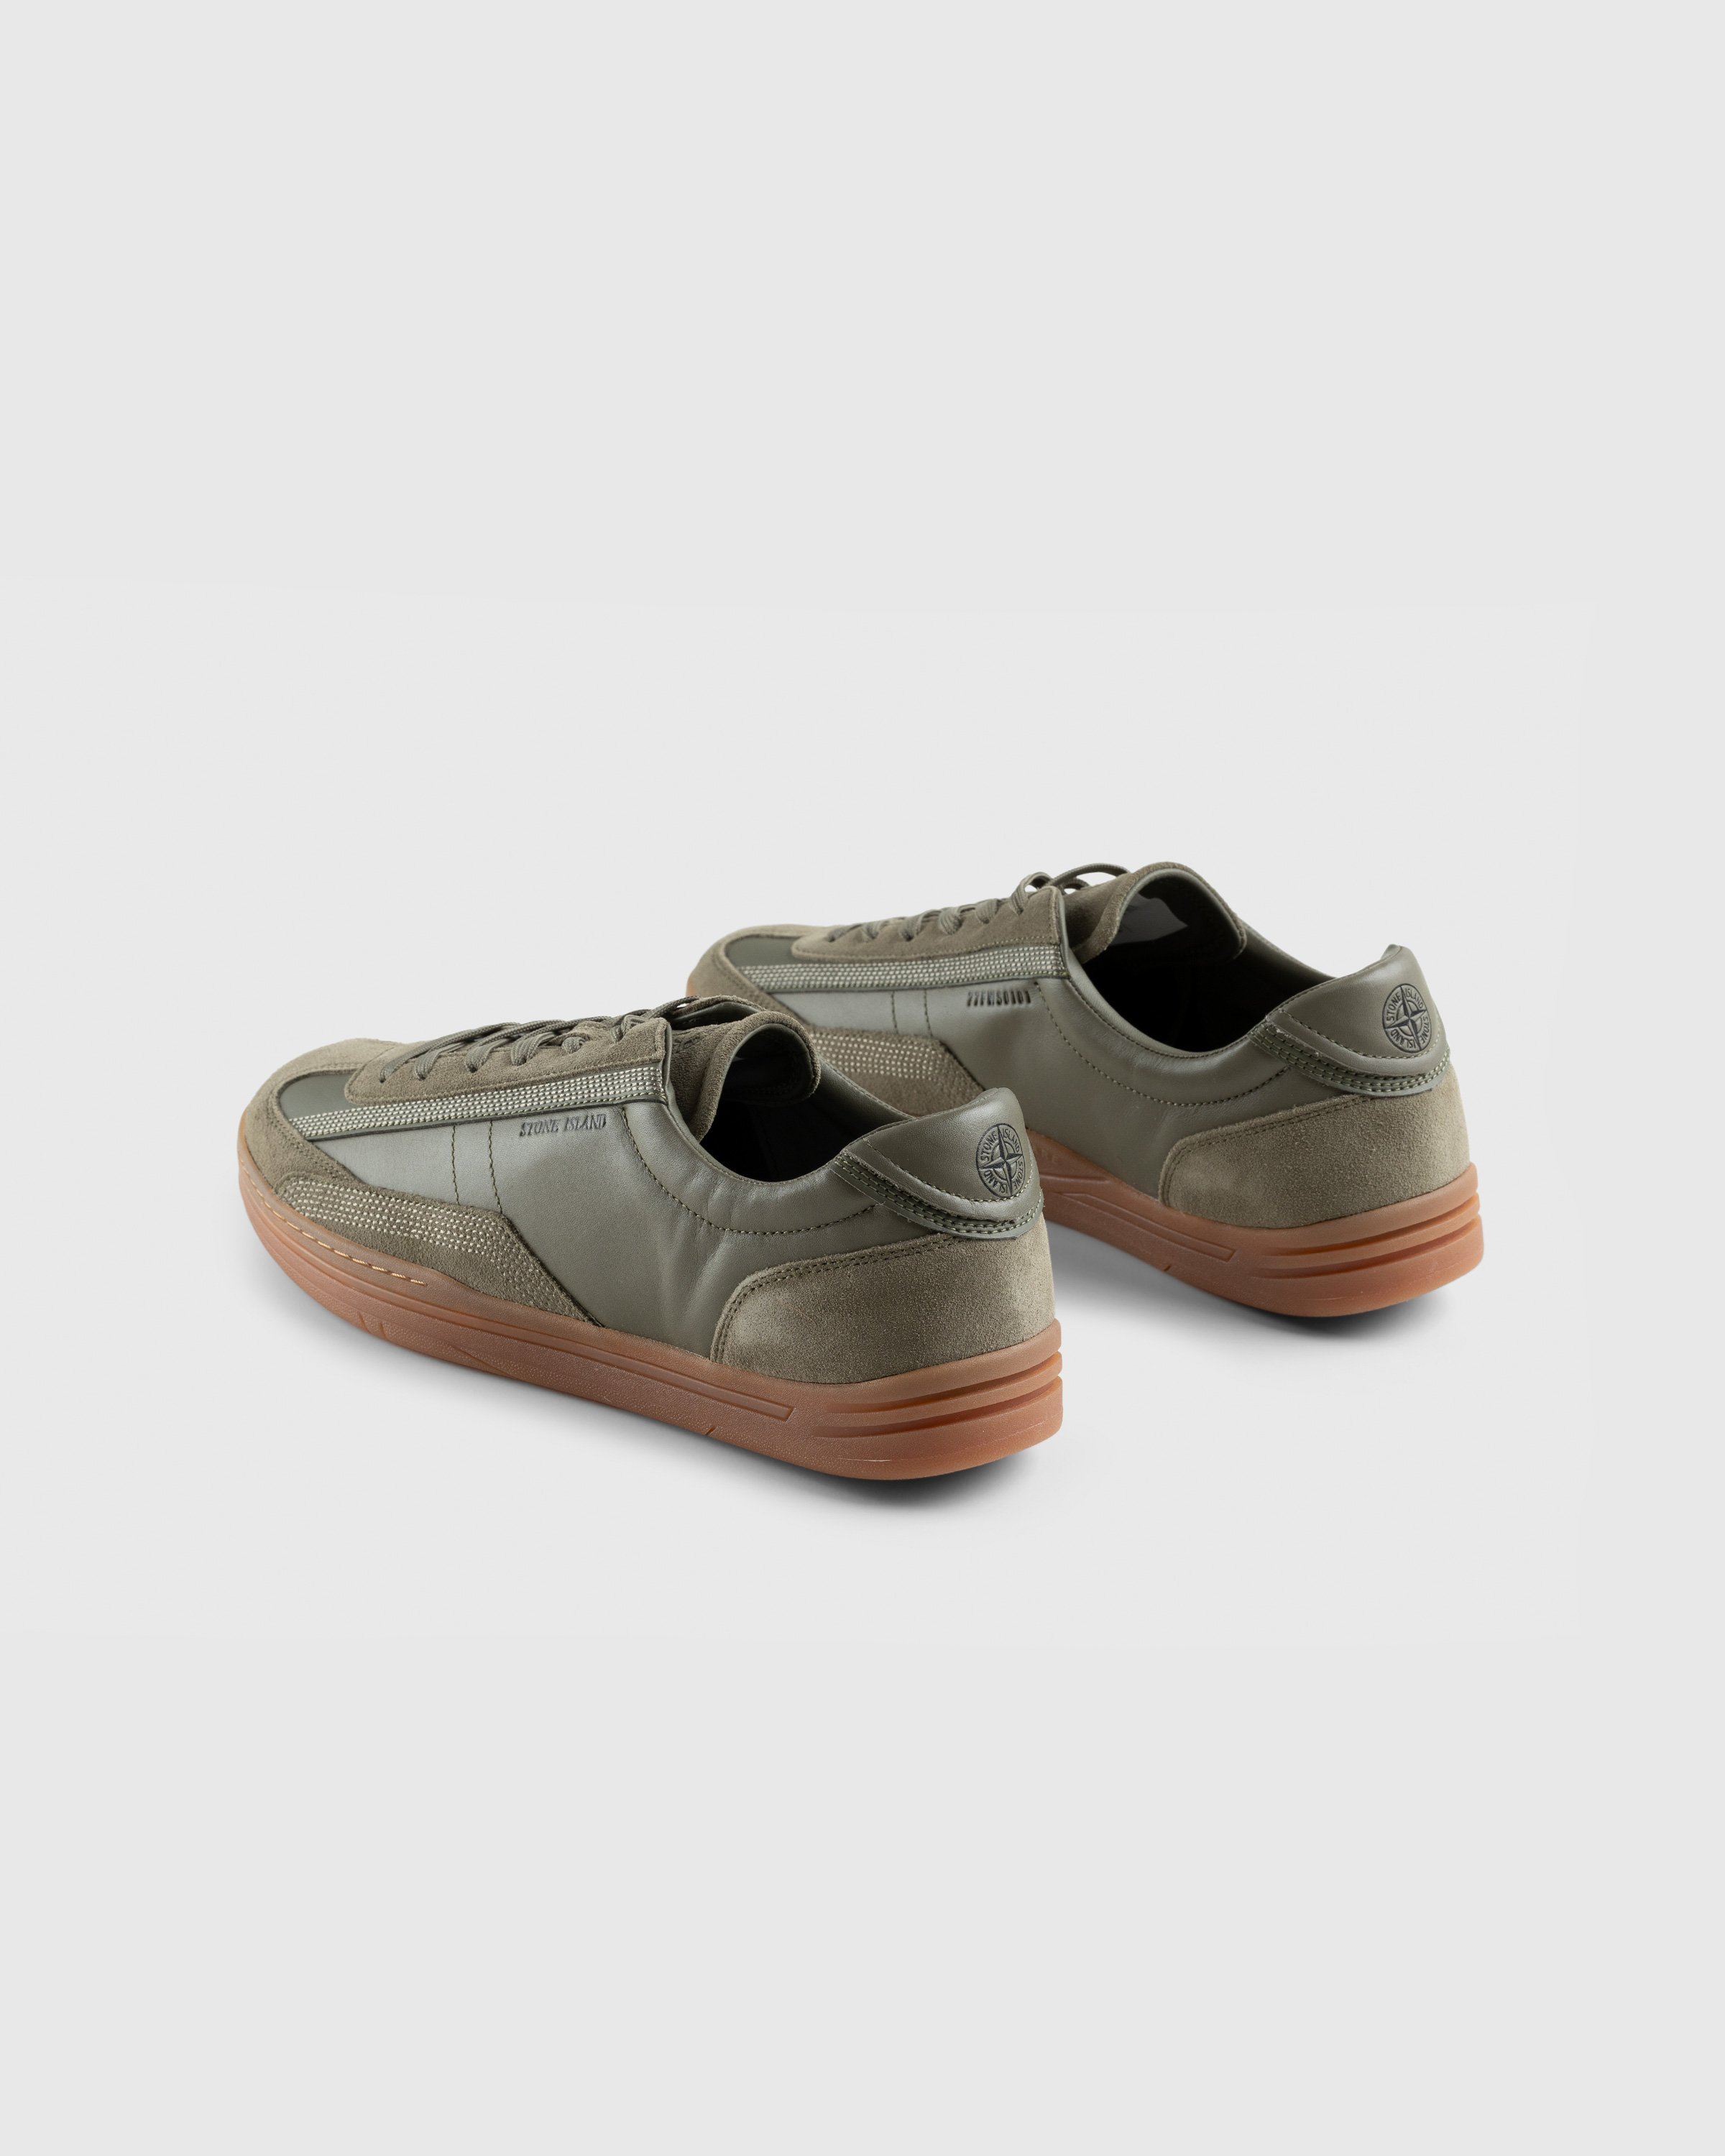 Stone Island - Rock Sneaker Khaki - Footwear - Green - Image 4